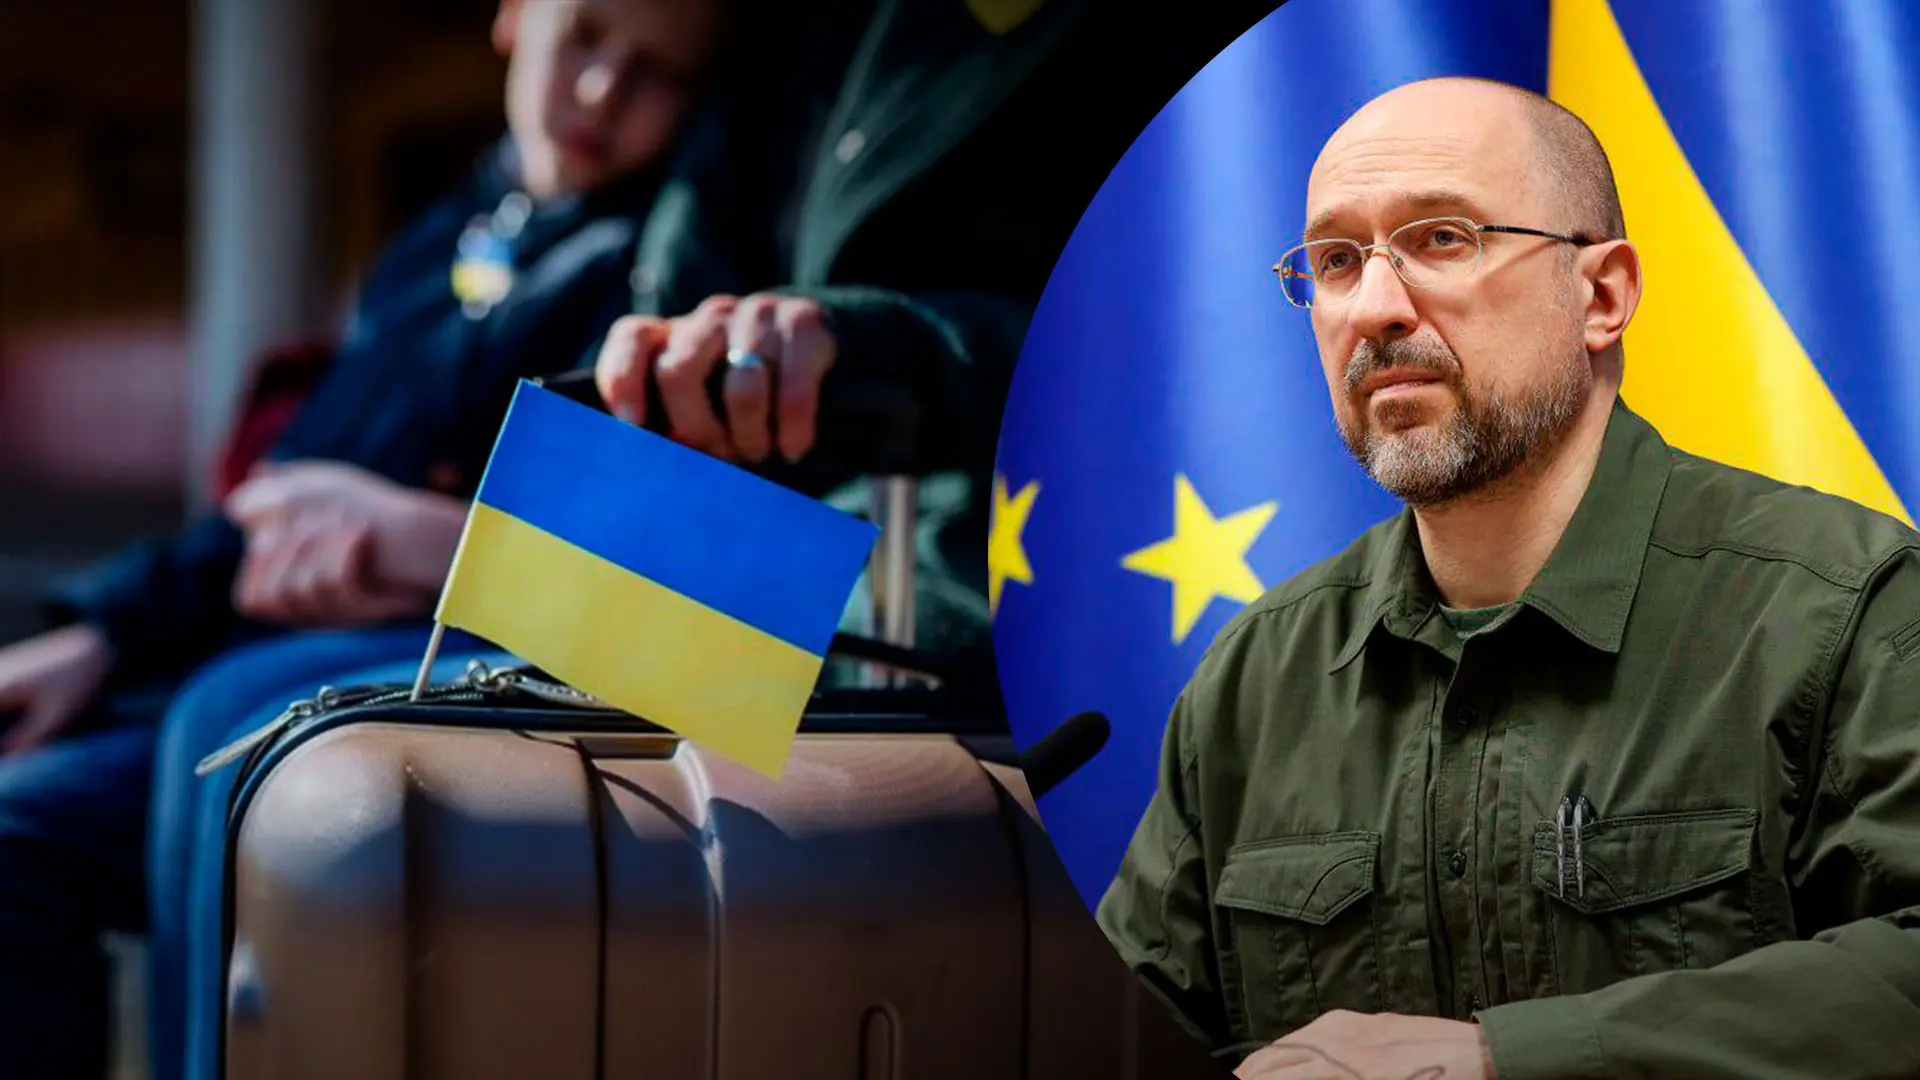 Немає мови про адміністративні заходи, - сказав Шмигаль щодо повернення українців з-за кордону.